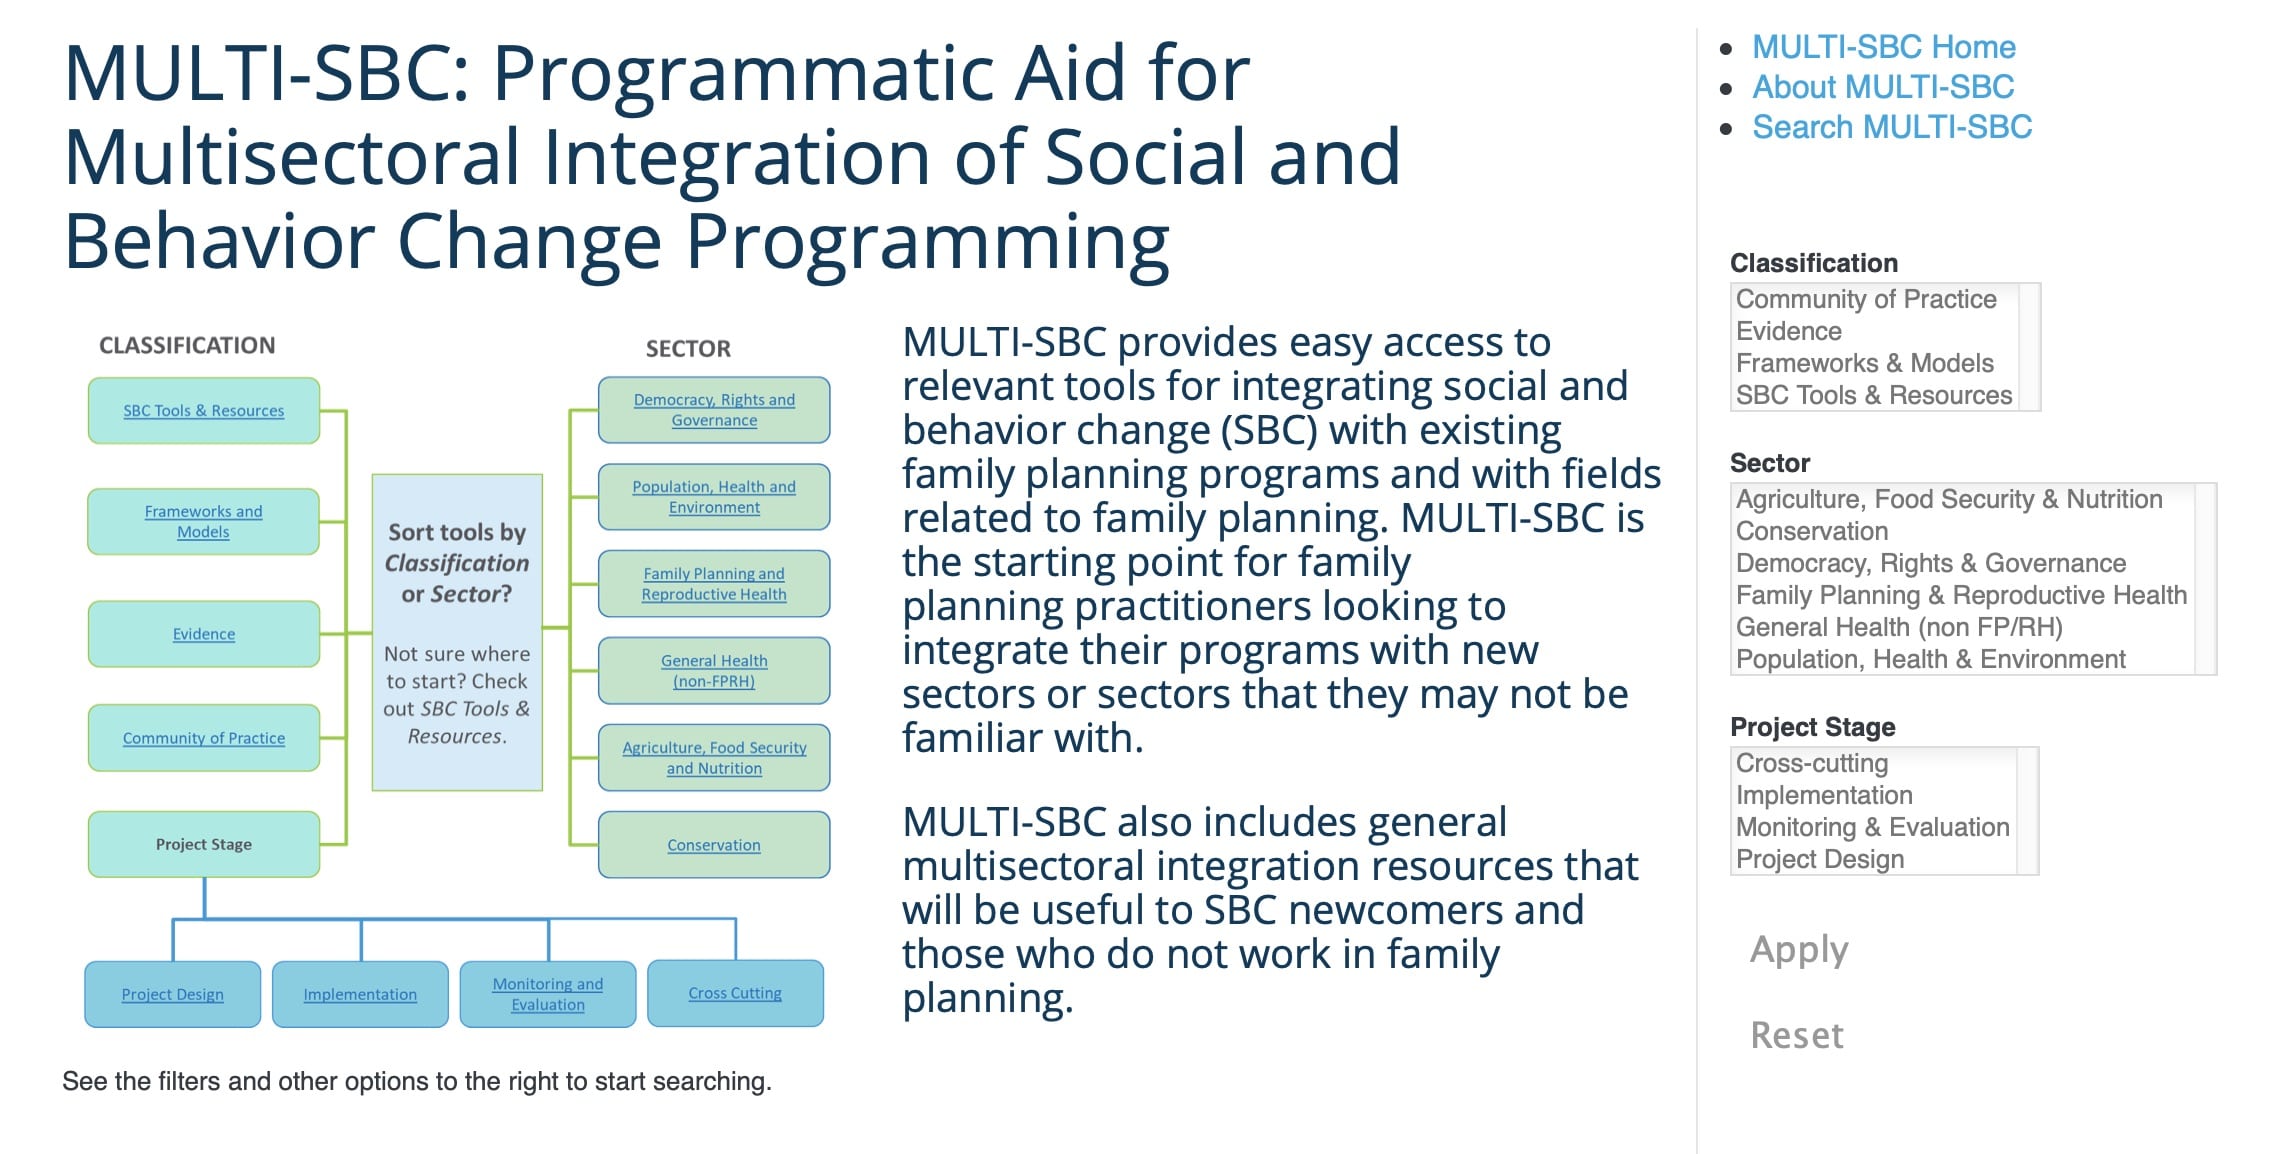 MULTI-SBC : Aide programmatique pour l'intégration multisectorielle des programmes de changement social et de comportement